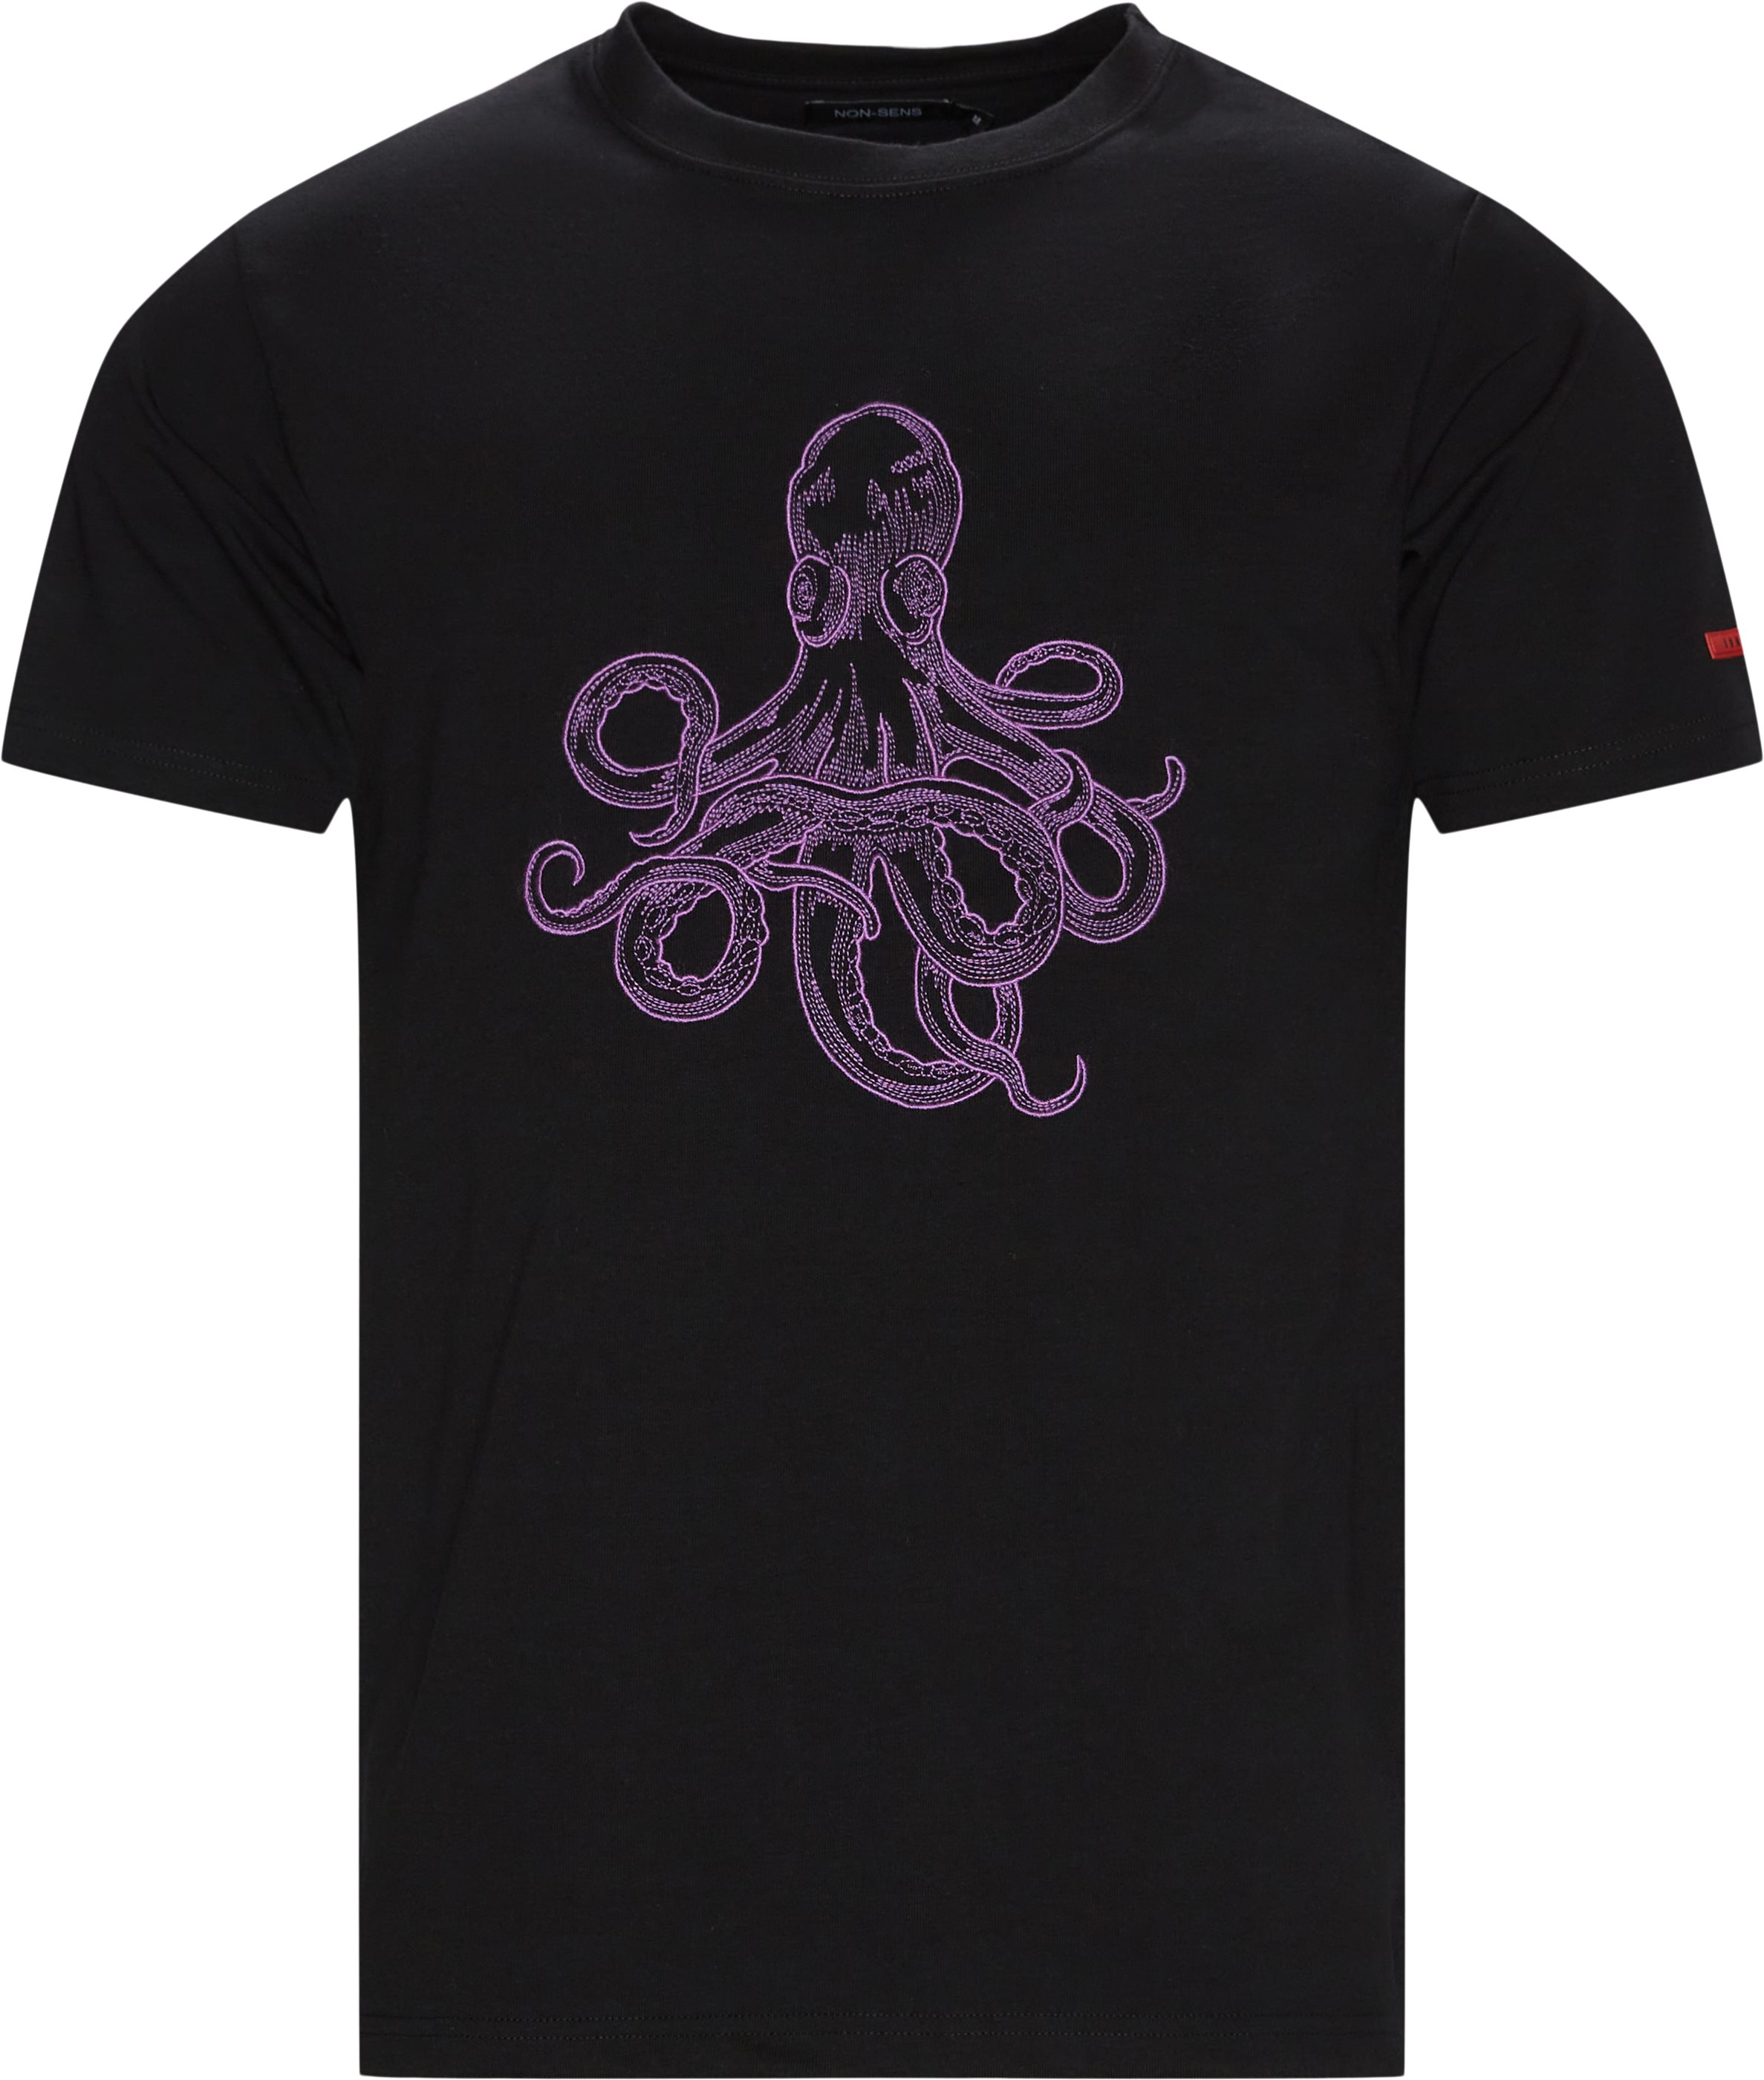 Octopus Tee - T-shirts - Regular fit - Svart